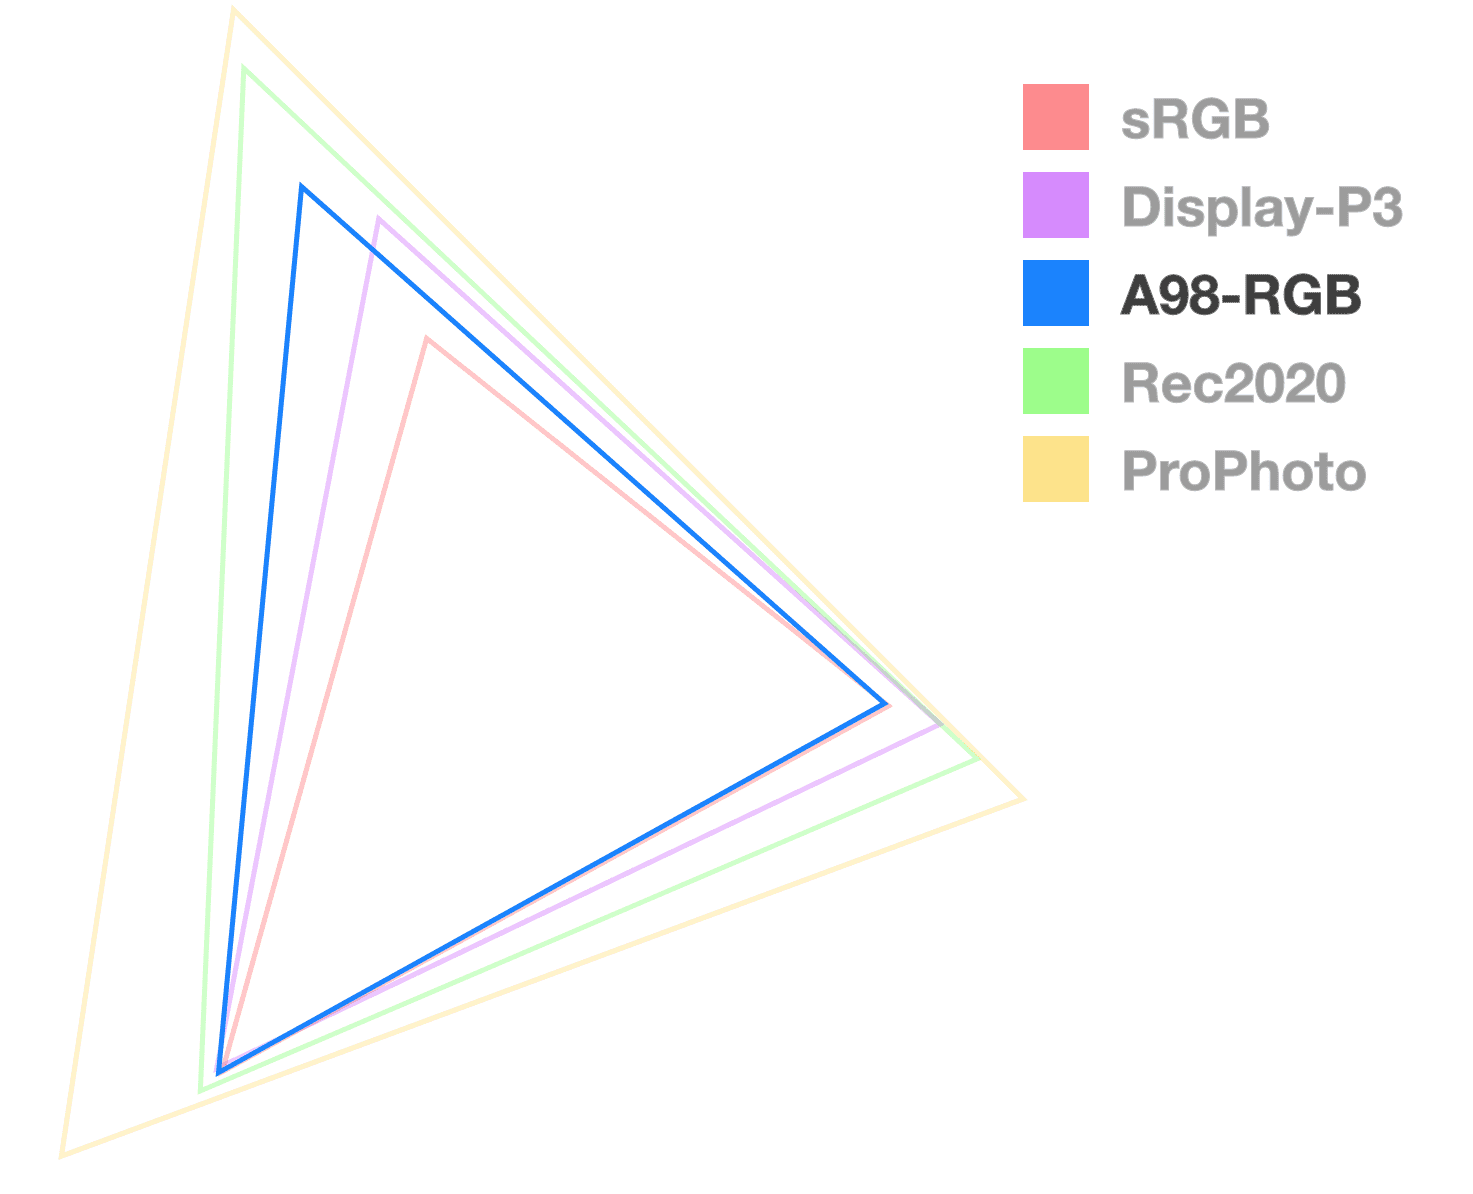 สามเหลี่ยม A98 เป็นสามเหลี่ยมเดียวที่ทึบแสงเต็มที่ซึ่งช่วยให้เห็นภาพขนาดของขอบเขต ซึ่งดูเหมือนกับสามเหลี่ยมขนาดกลาง